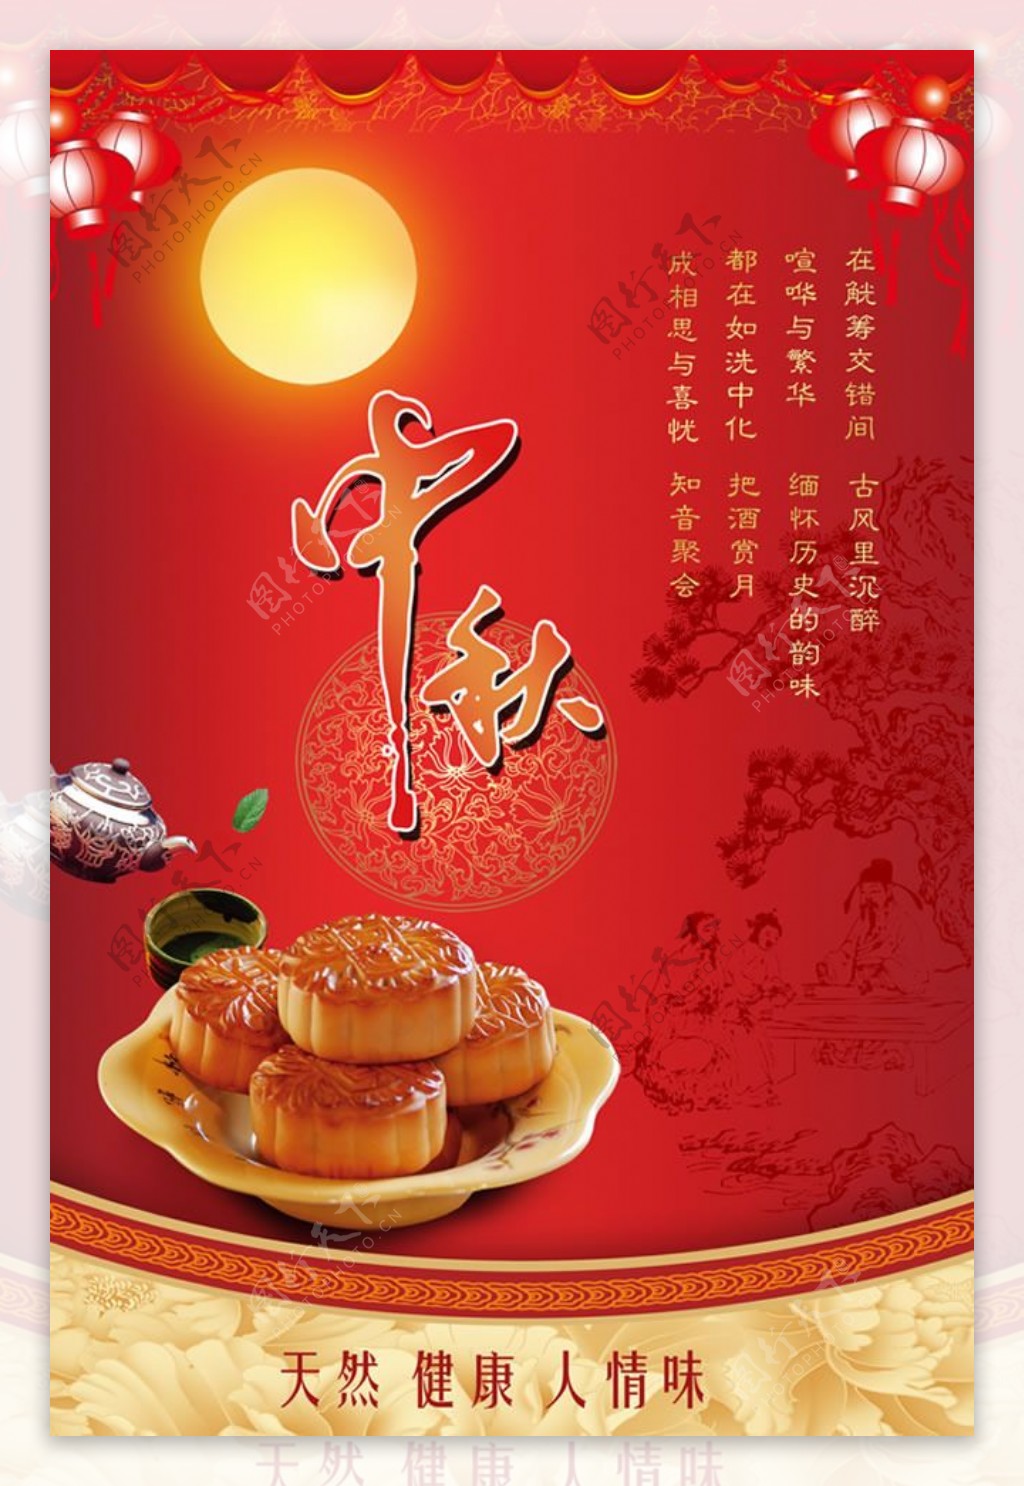 中秋节月饼促销宣传海报PSD素材